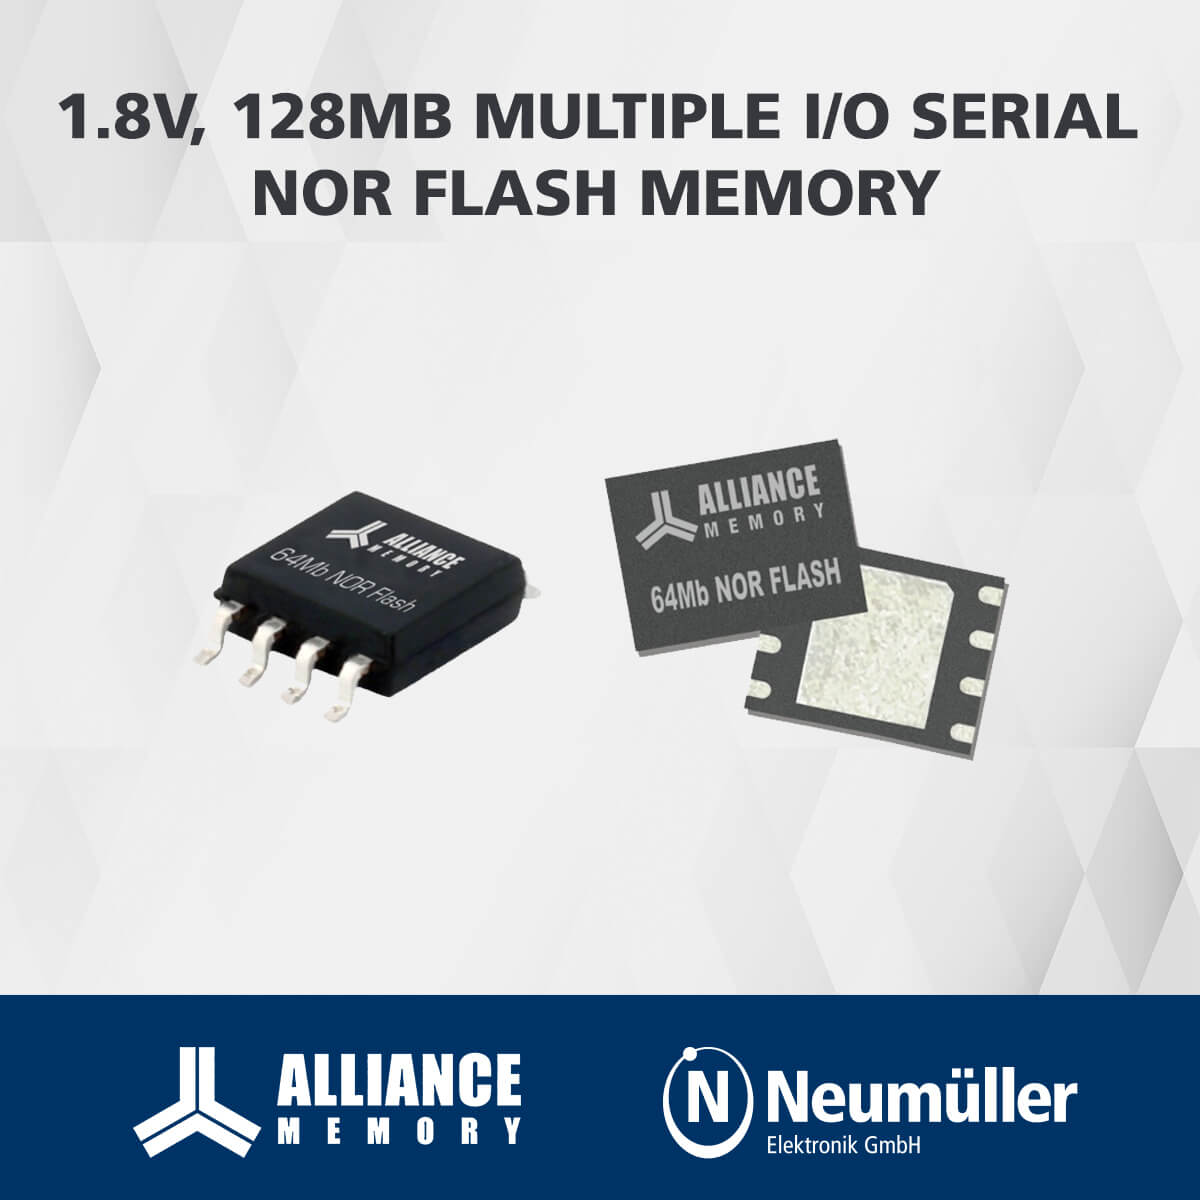 AS25F-Serie von Alliance Memory um 2 neue 128MB NOR Flash Memorys erweitert